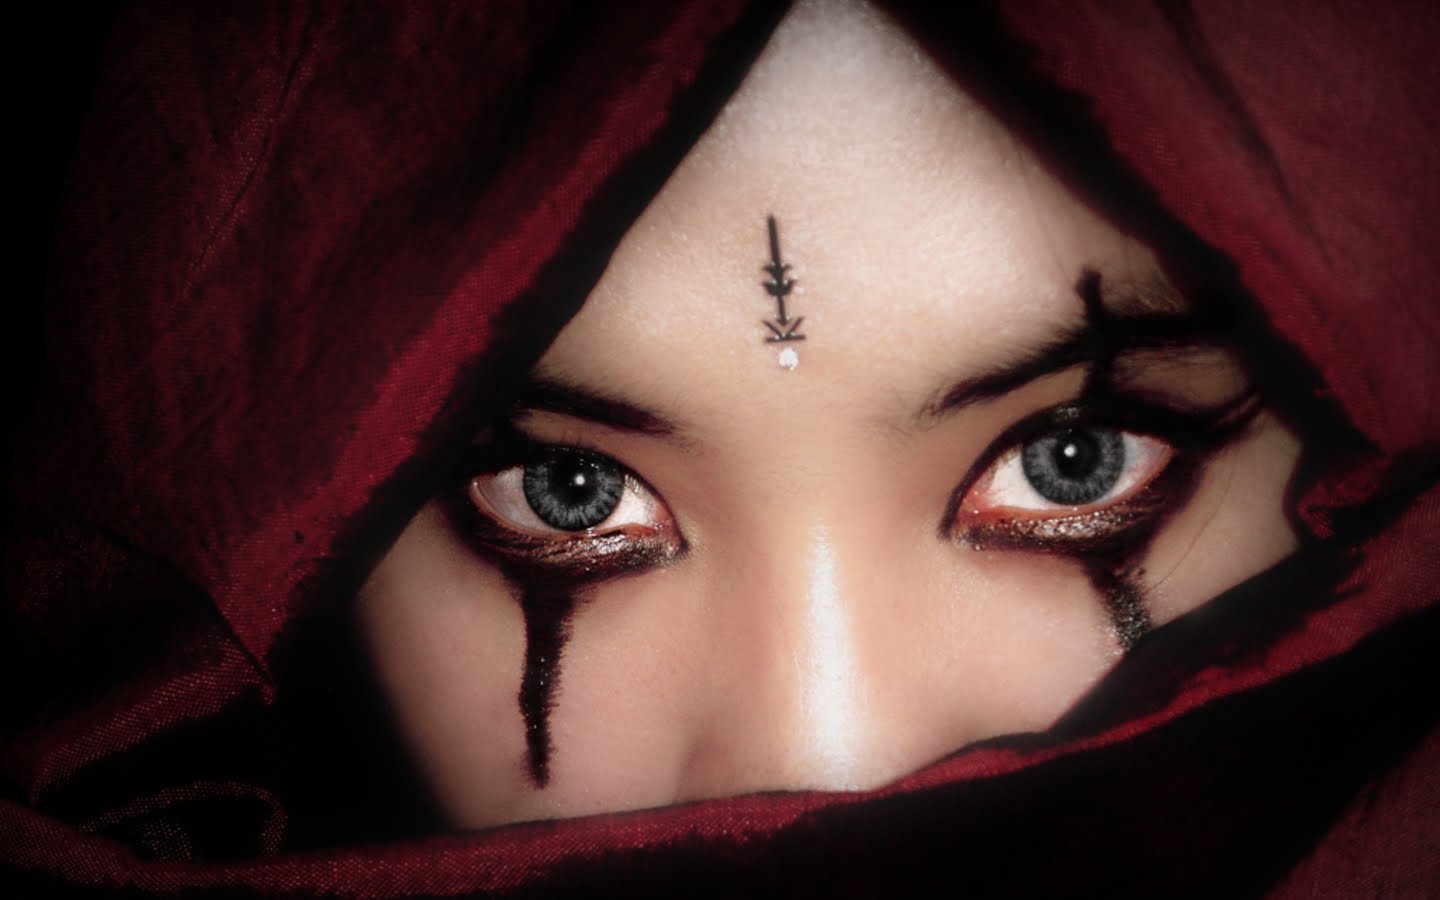 소녀의 눈 벽지,얼굴,눈썹,말뿐인,눈,빨간